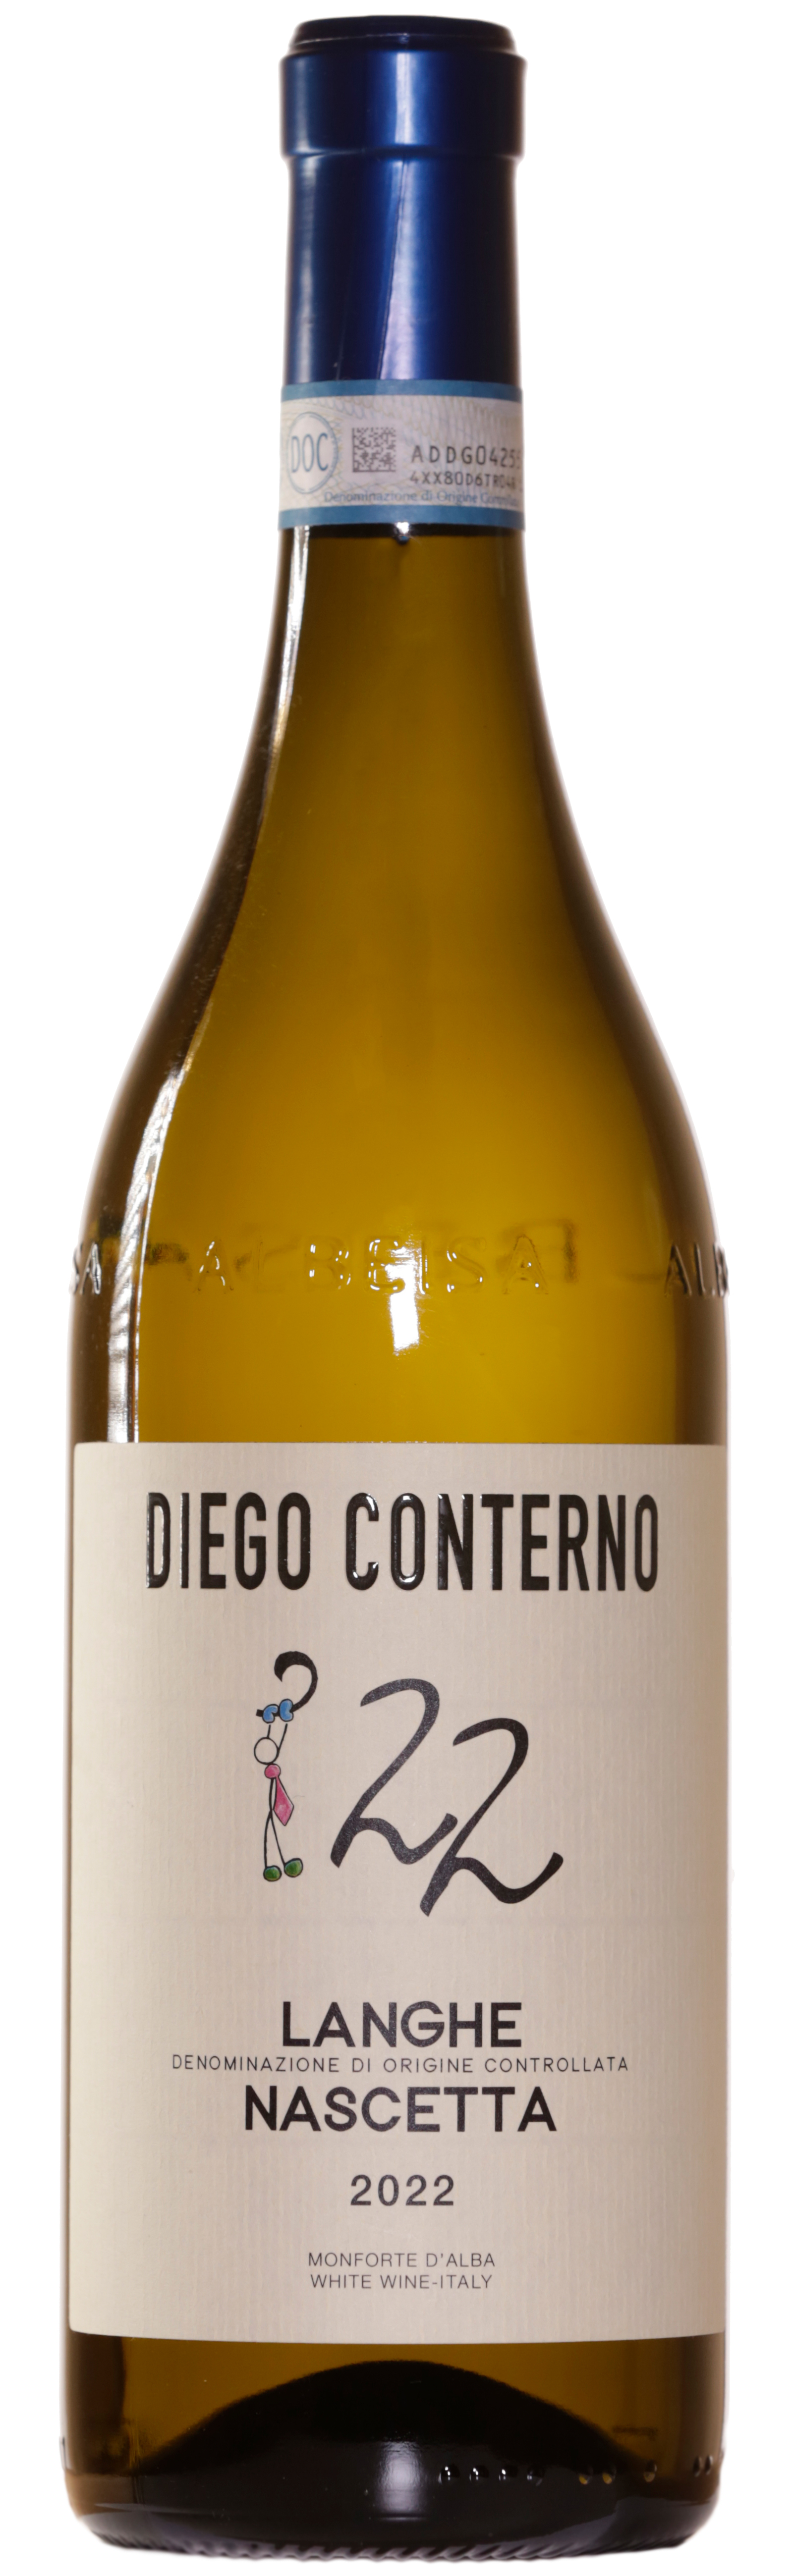 Wine Diego Conterno Langhe Nascetta